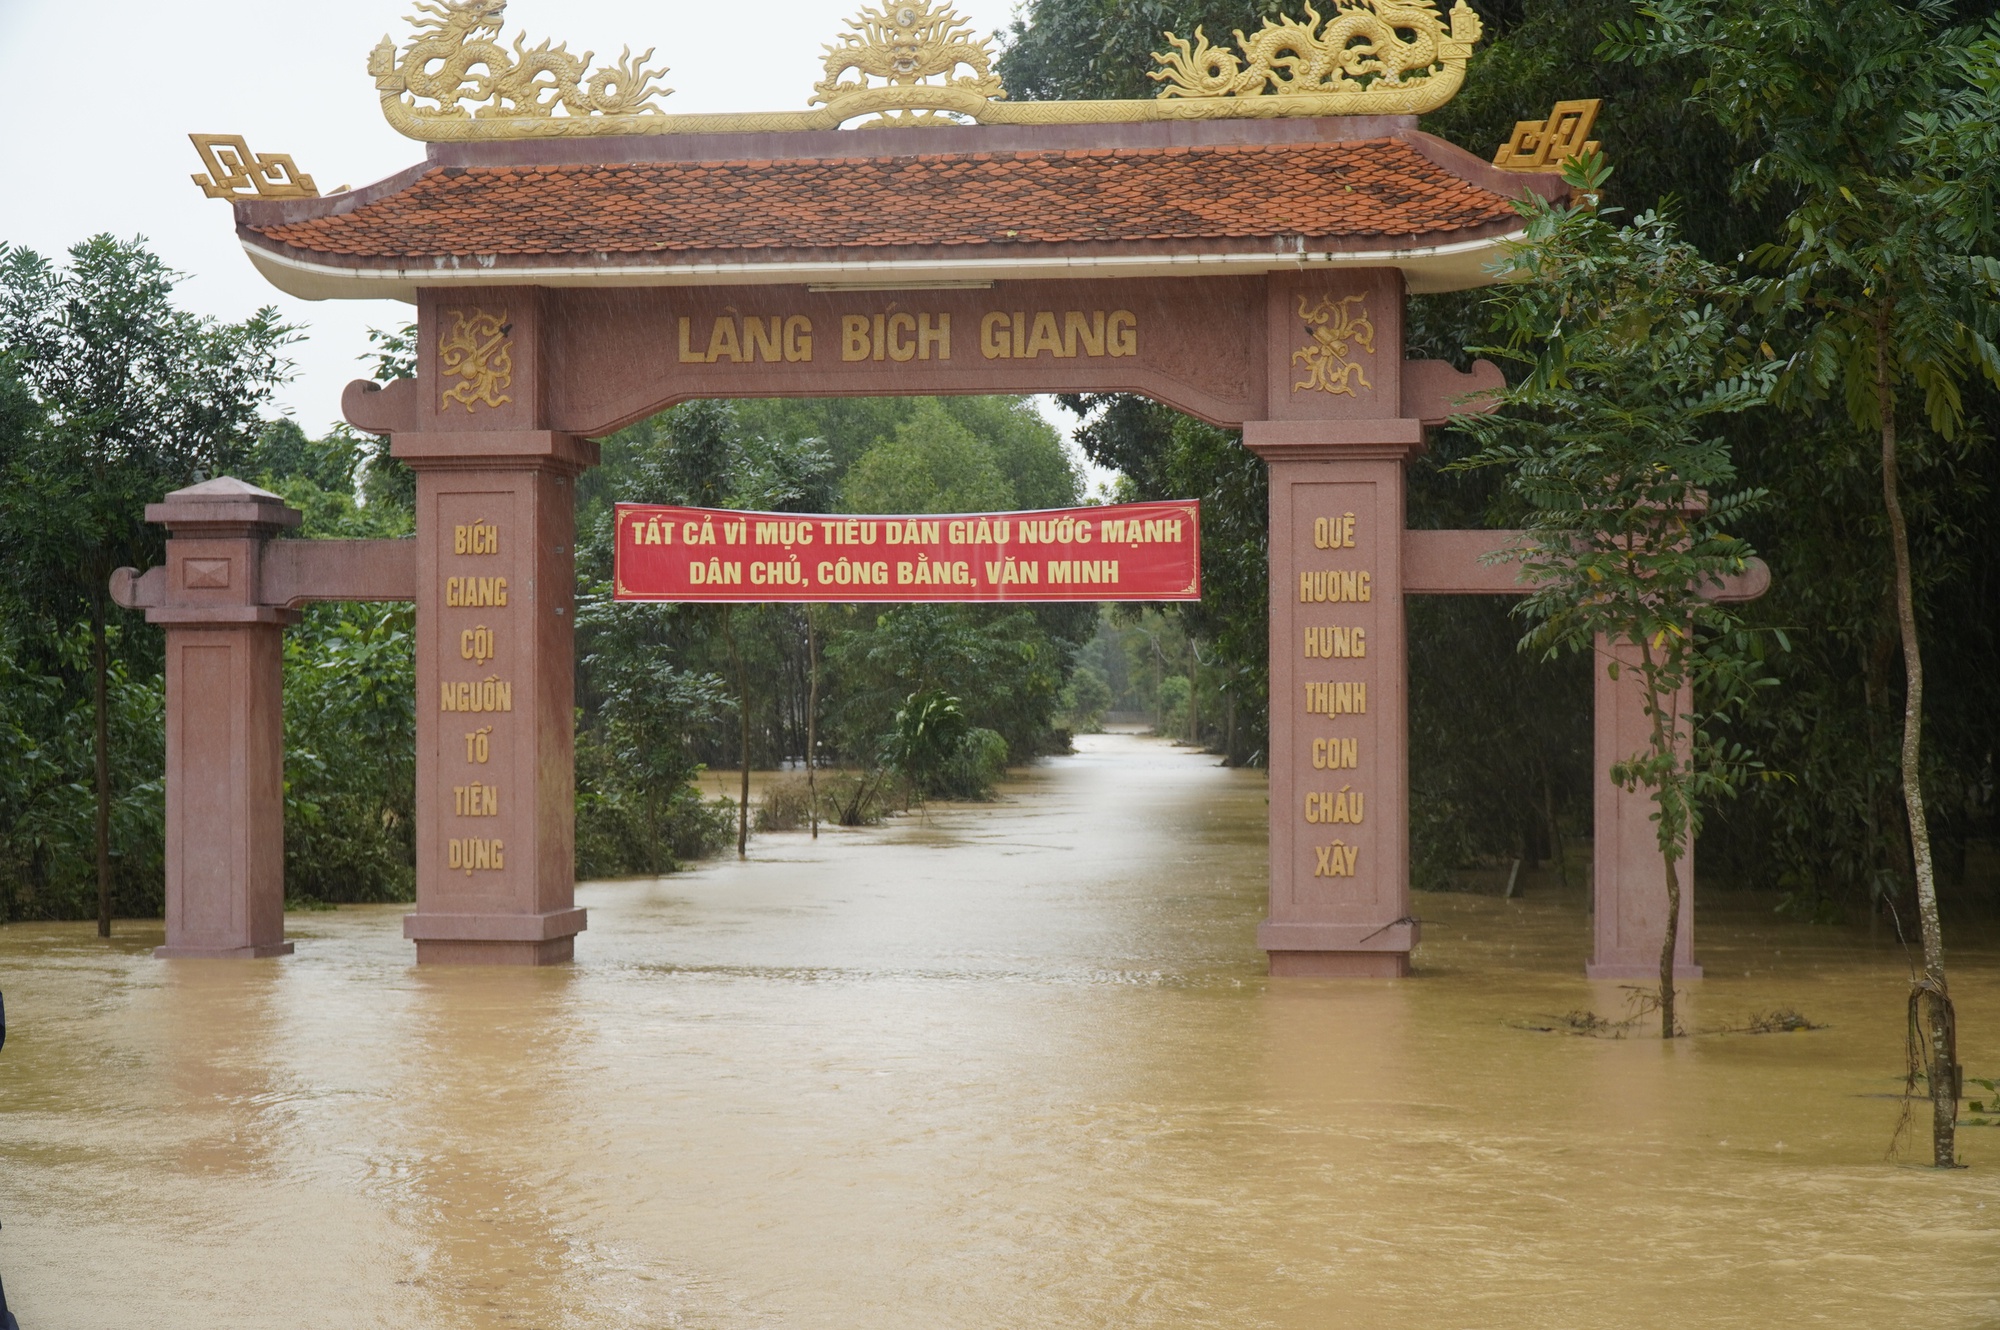 Mưa lớn, hàng trăm nhà dân ở Quảng Trị bị ngập lụt trong đêm - Ảnh 2.